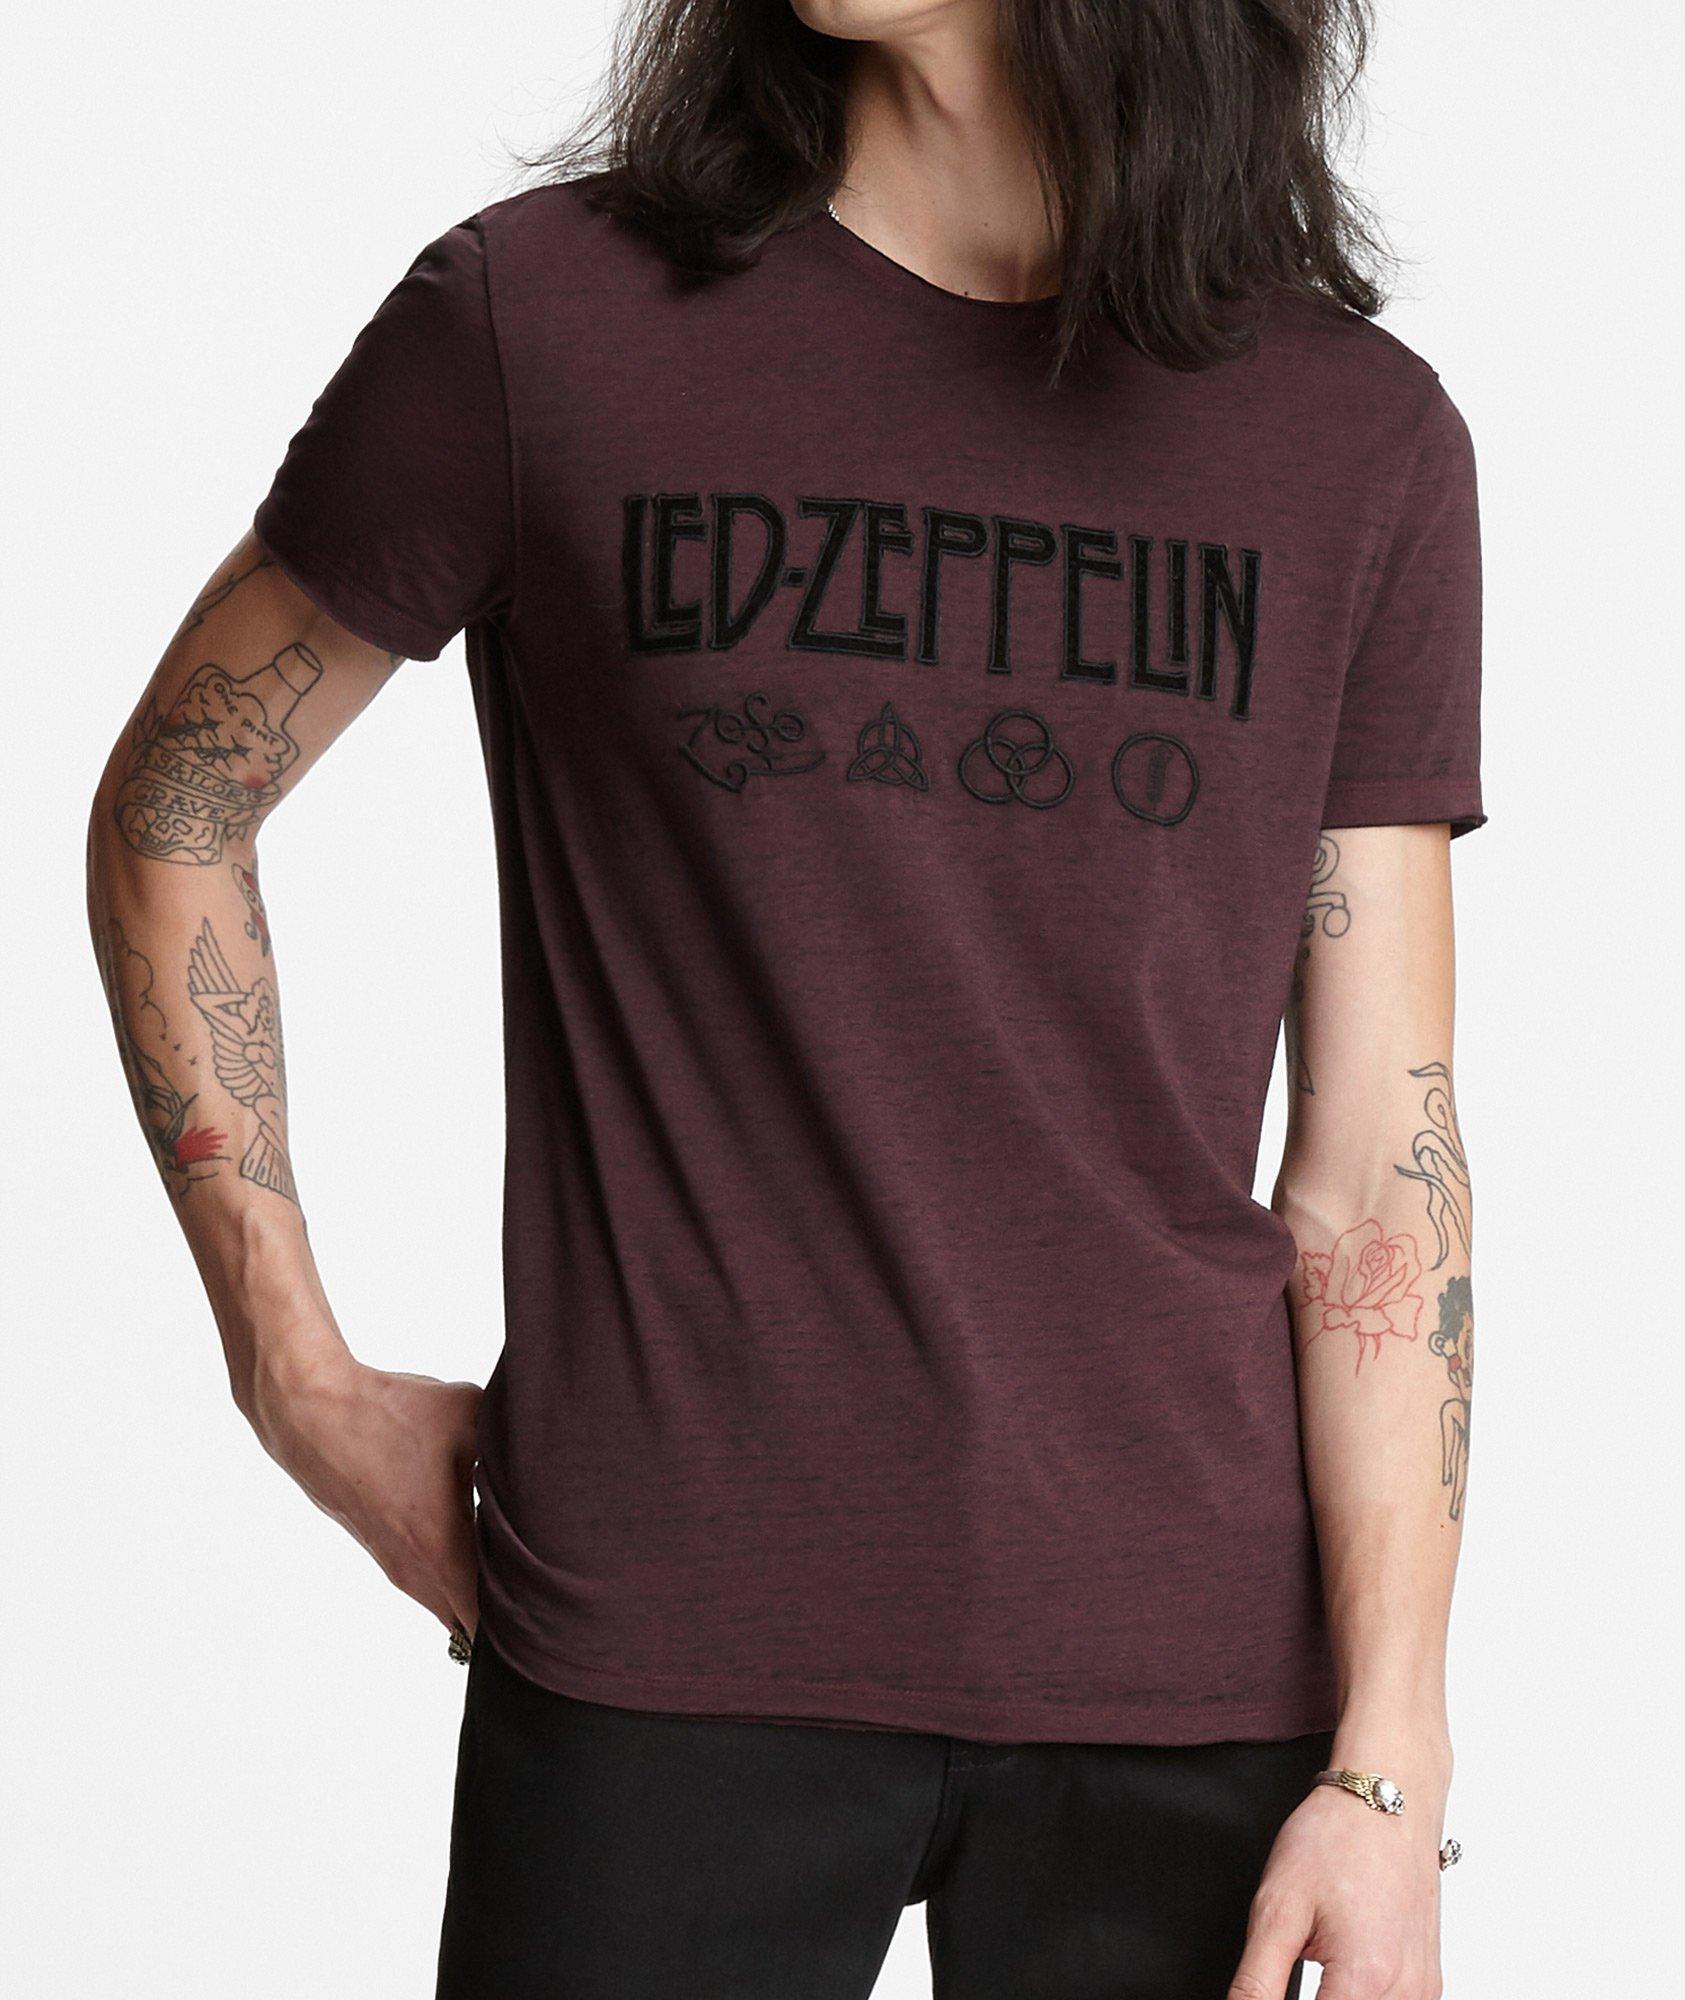 T-shirt de Led Zeppelin avec symboles image 0